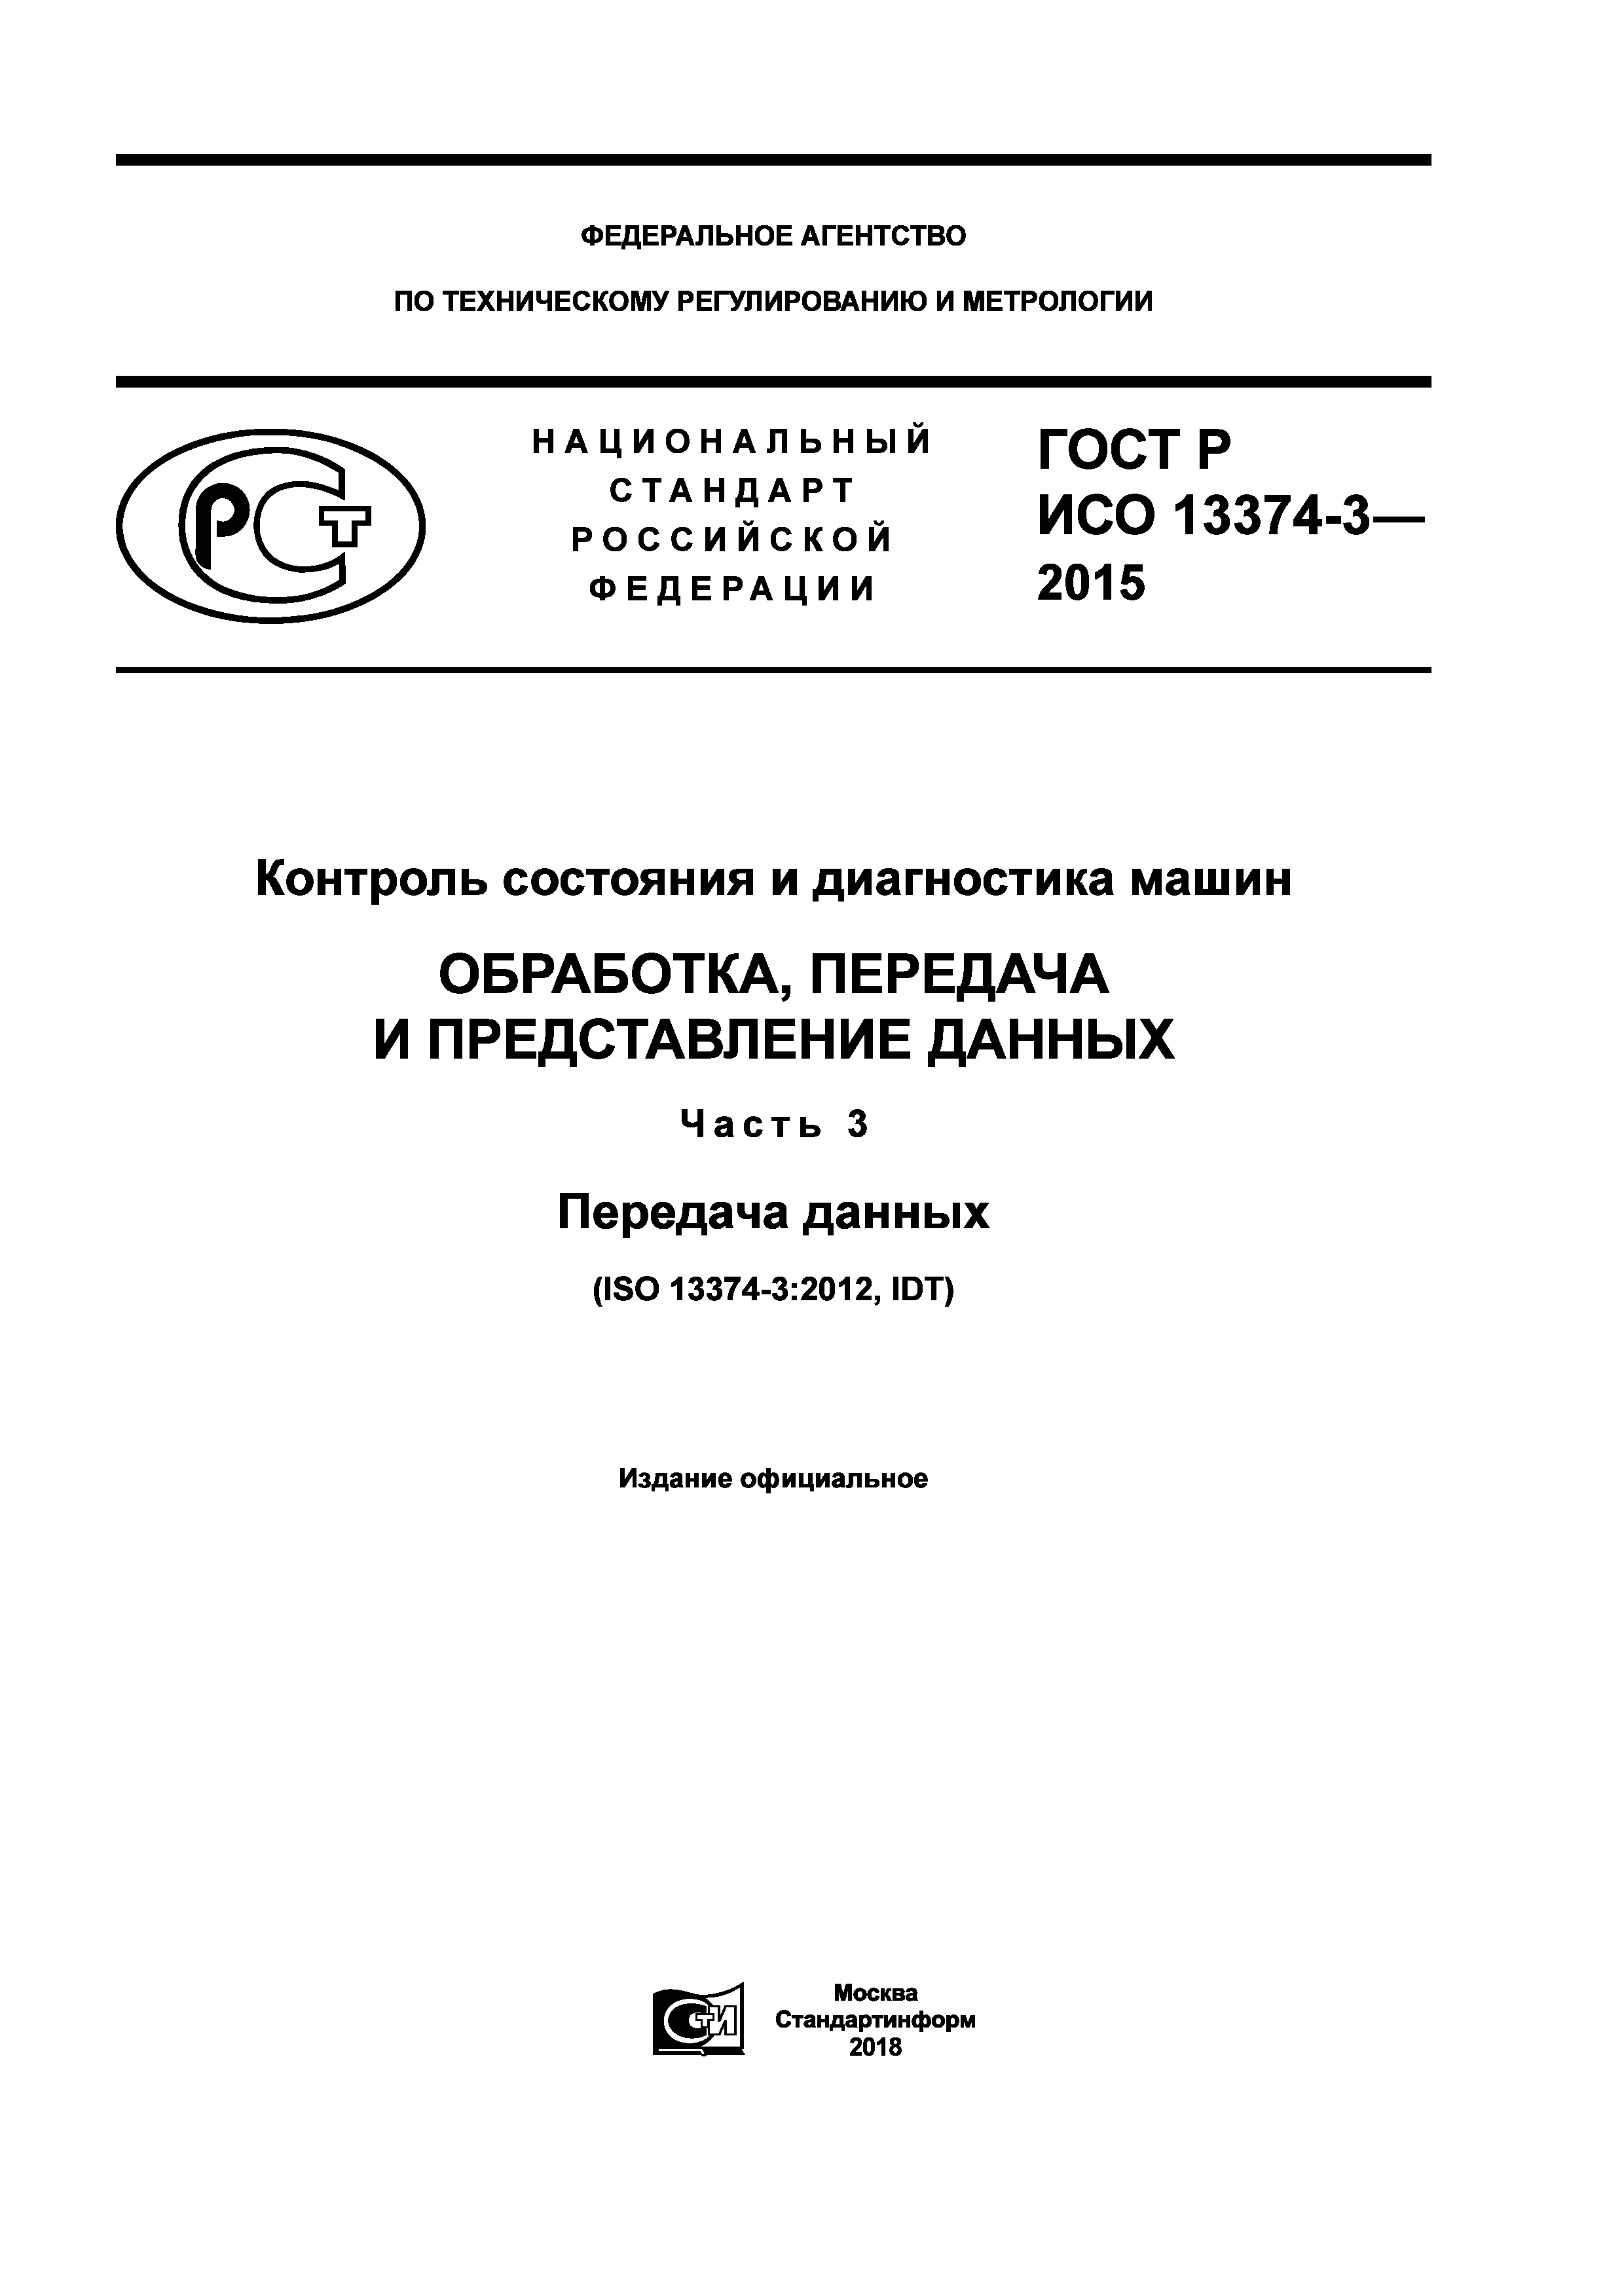 ГОСТ Р ИСО 13374-3-2015